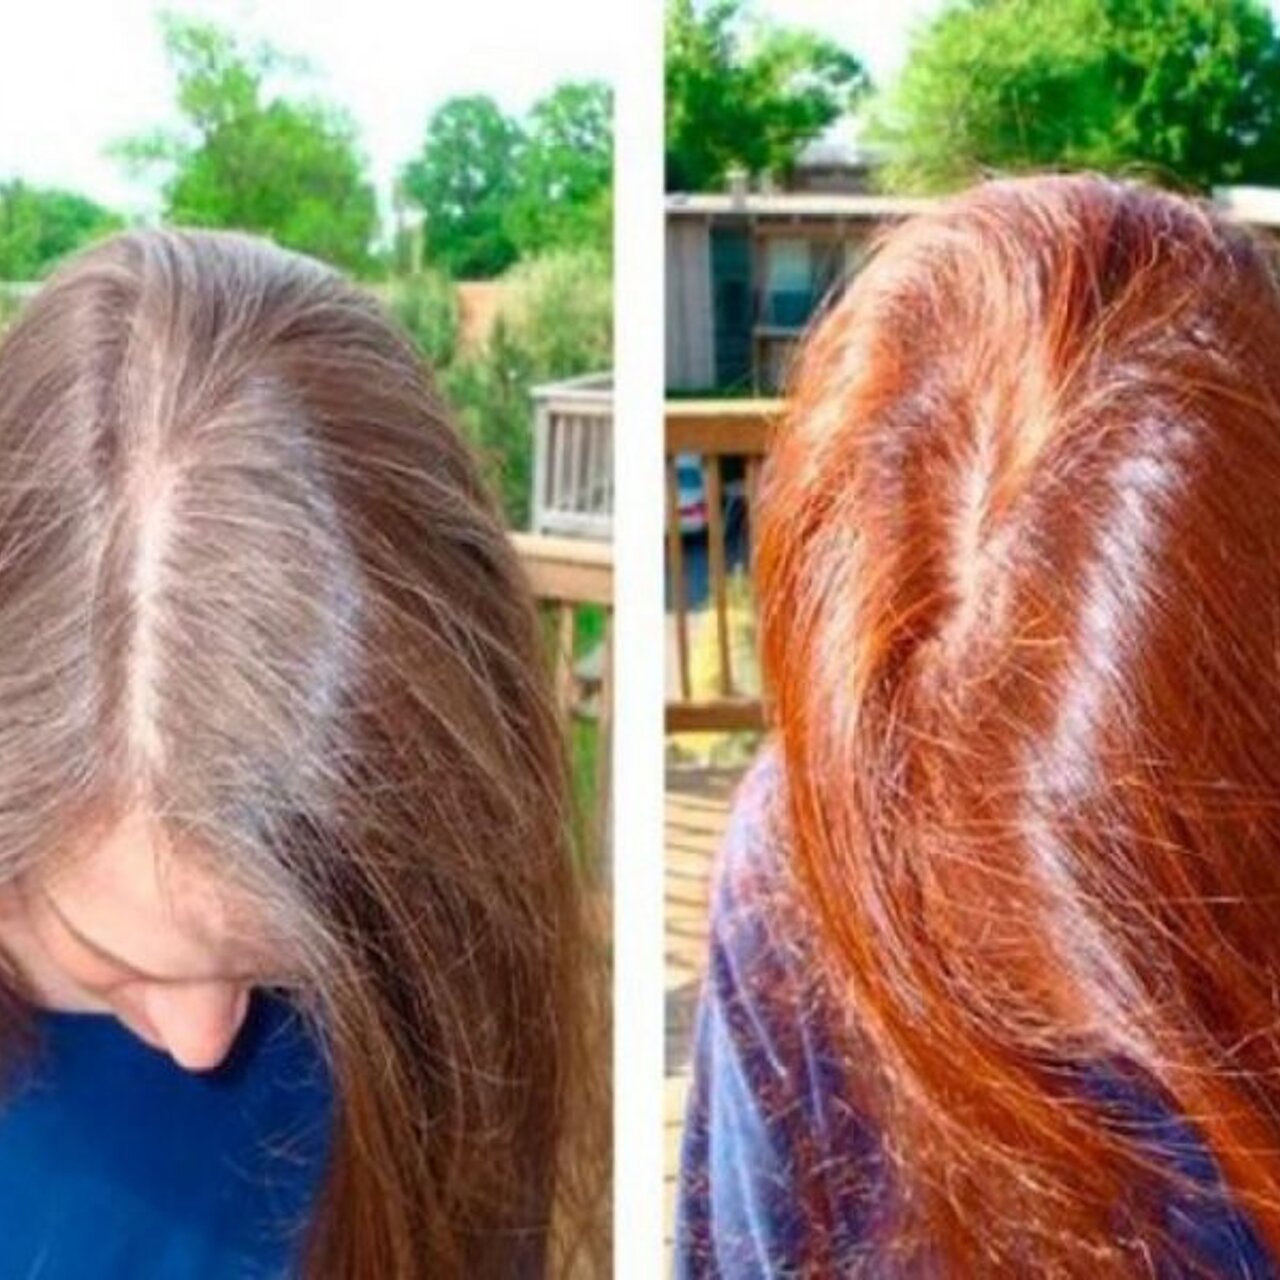 Краска восстанавливает волосы